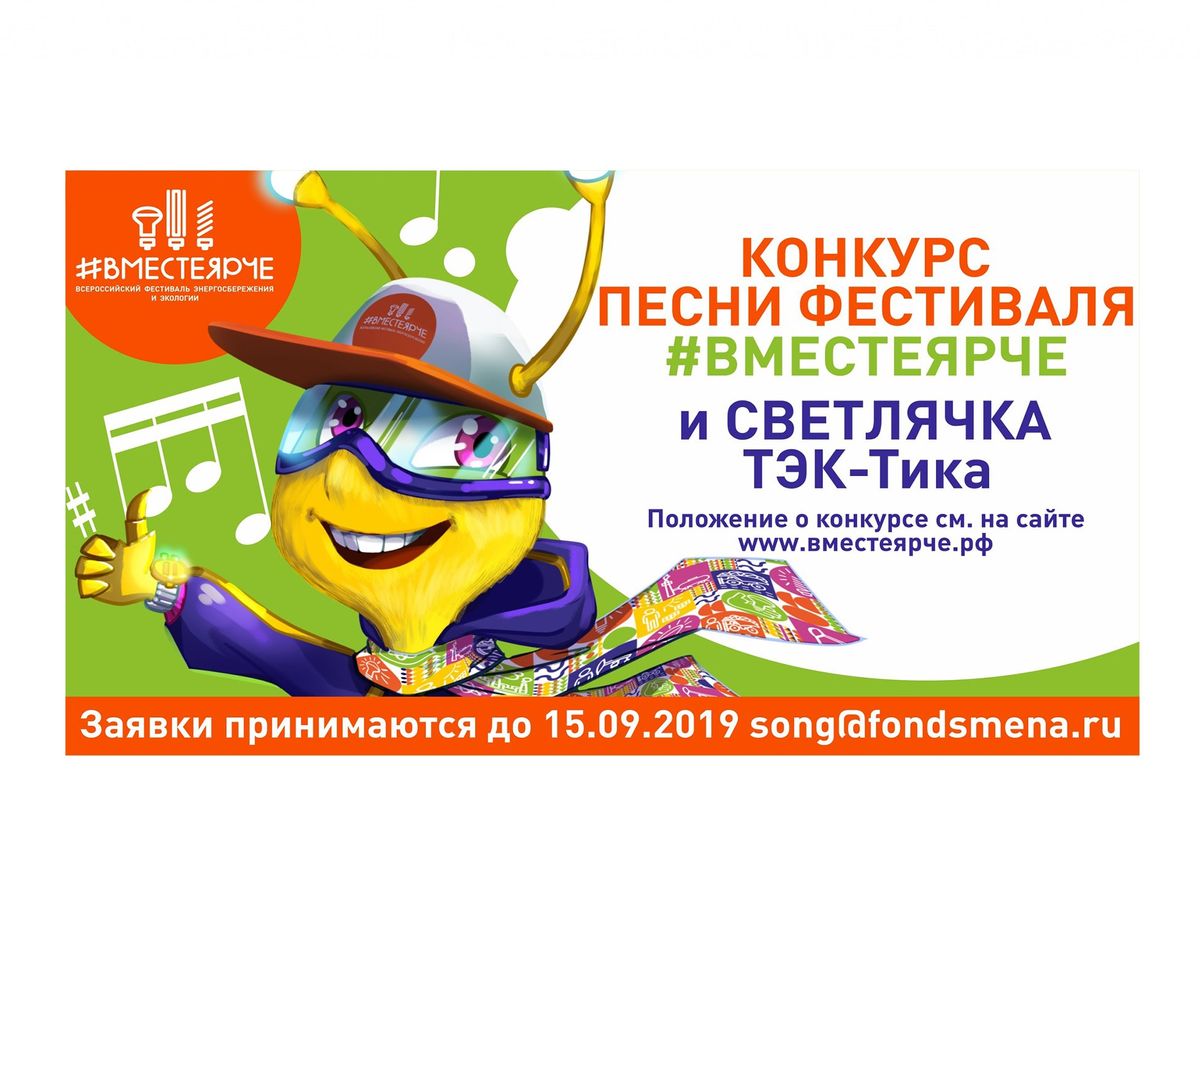 Всероссийский фестиваль энергосбережения и экологии #ВместеЯрче объявляет конкурс песни